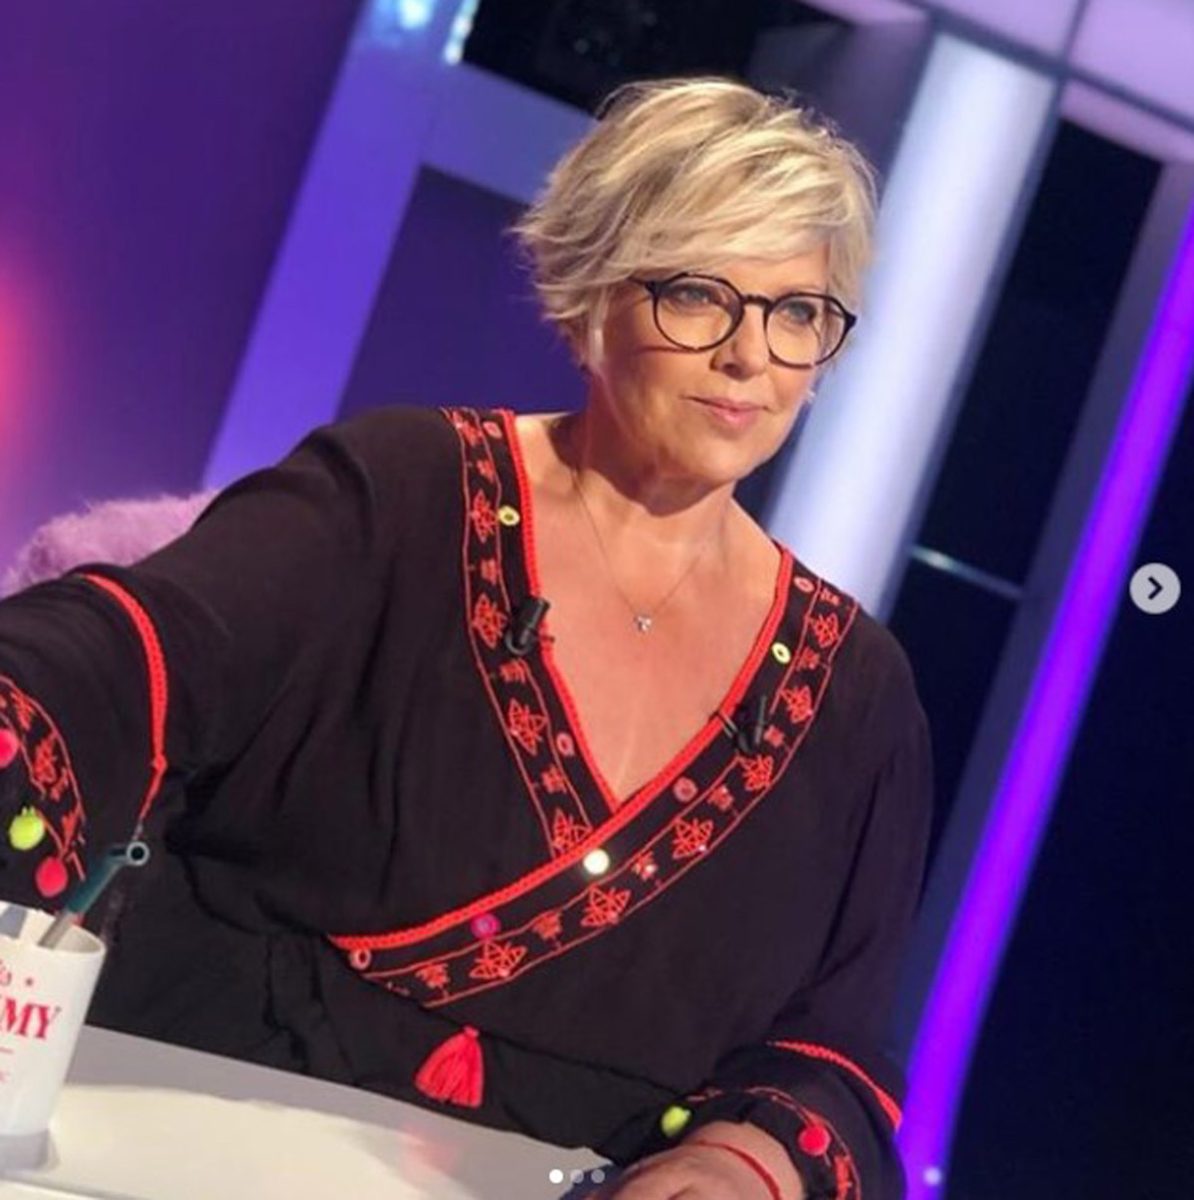 Départ-choc : Laurence Boccolini, la reine de TF1 les quitte pour France 2 !